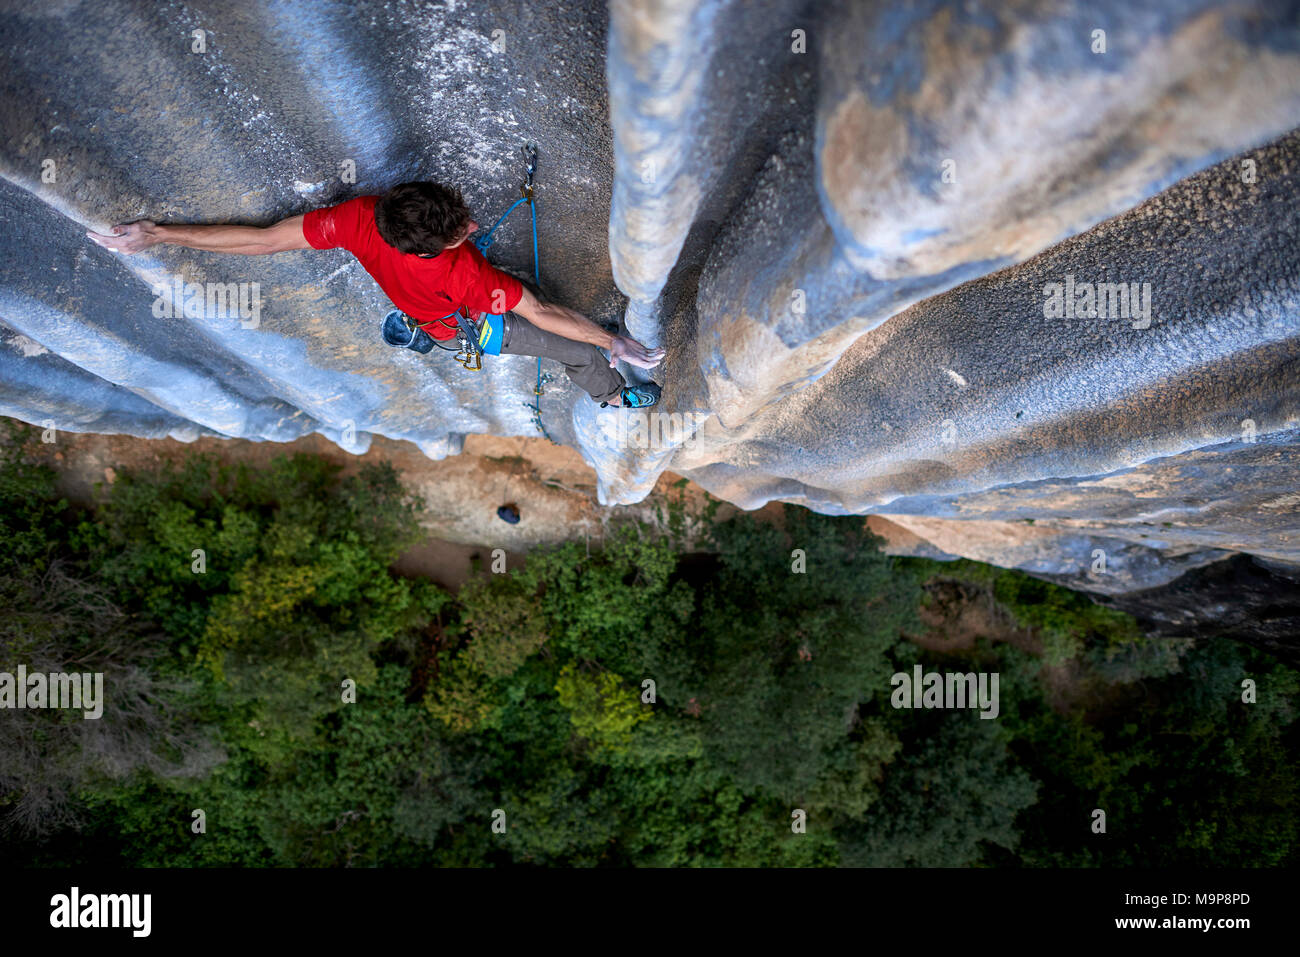 Italienisch professioneller Bergsteiger Stefano Ghisolfi auf einer  einwöchigen Reise nach Spanien während der Aufnahme von Standbildern und  Videos für seine neuen Sponsor The North Face. Während der Reise er La  Rambla, 9a+